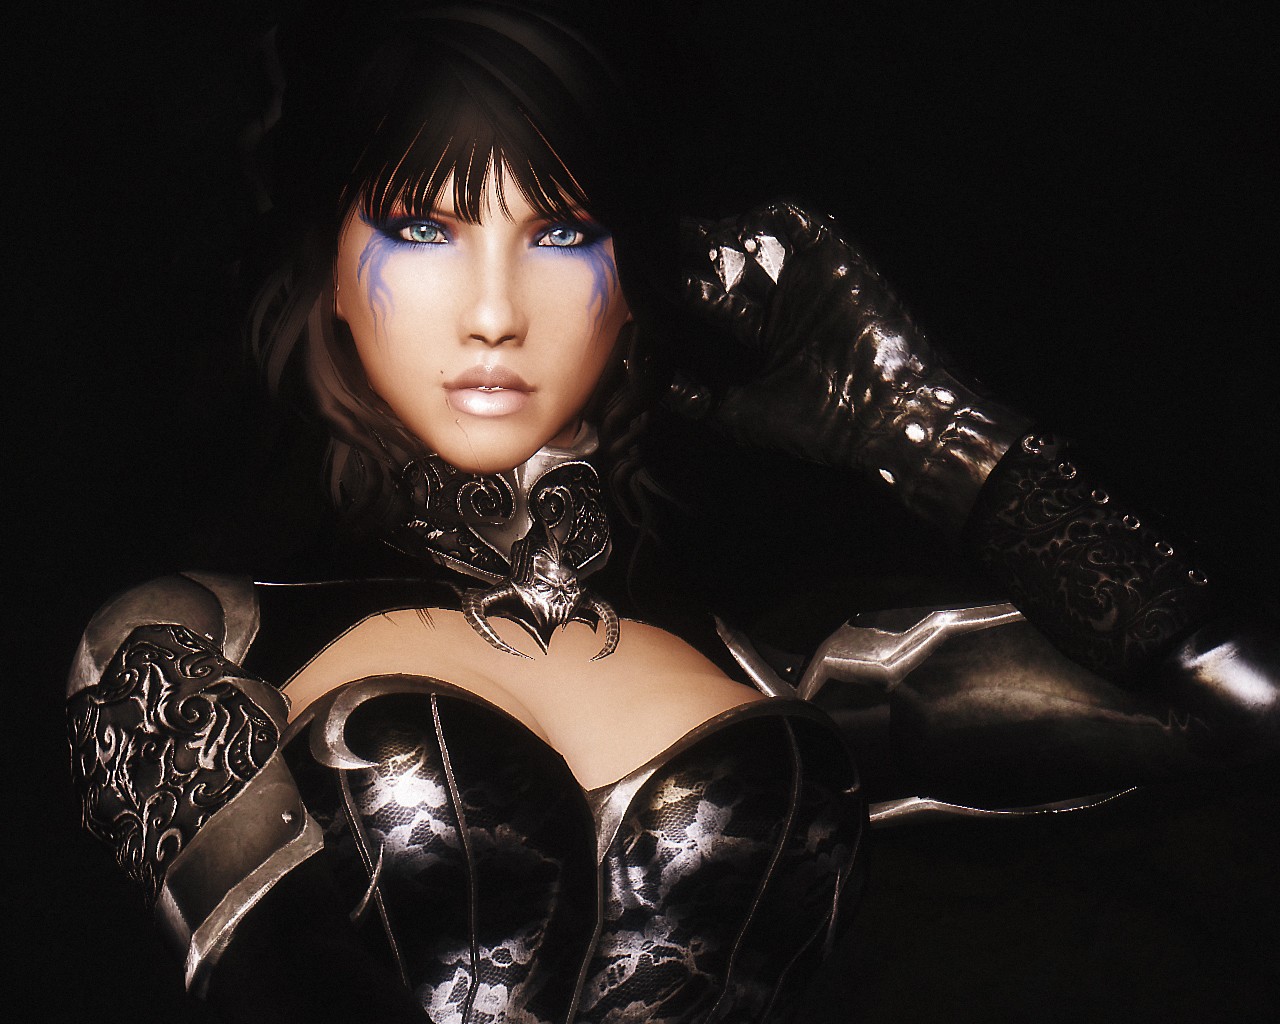 General 1280x1024 The Elder Scrolls V: Skyrim women leather leather armor vampires RPG video games PC gaming video game art video game girls fantasy art fantasy girl